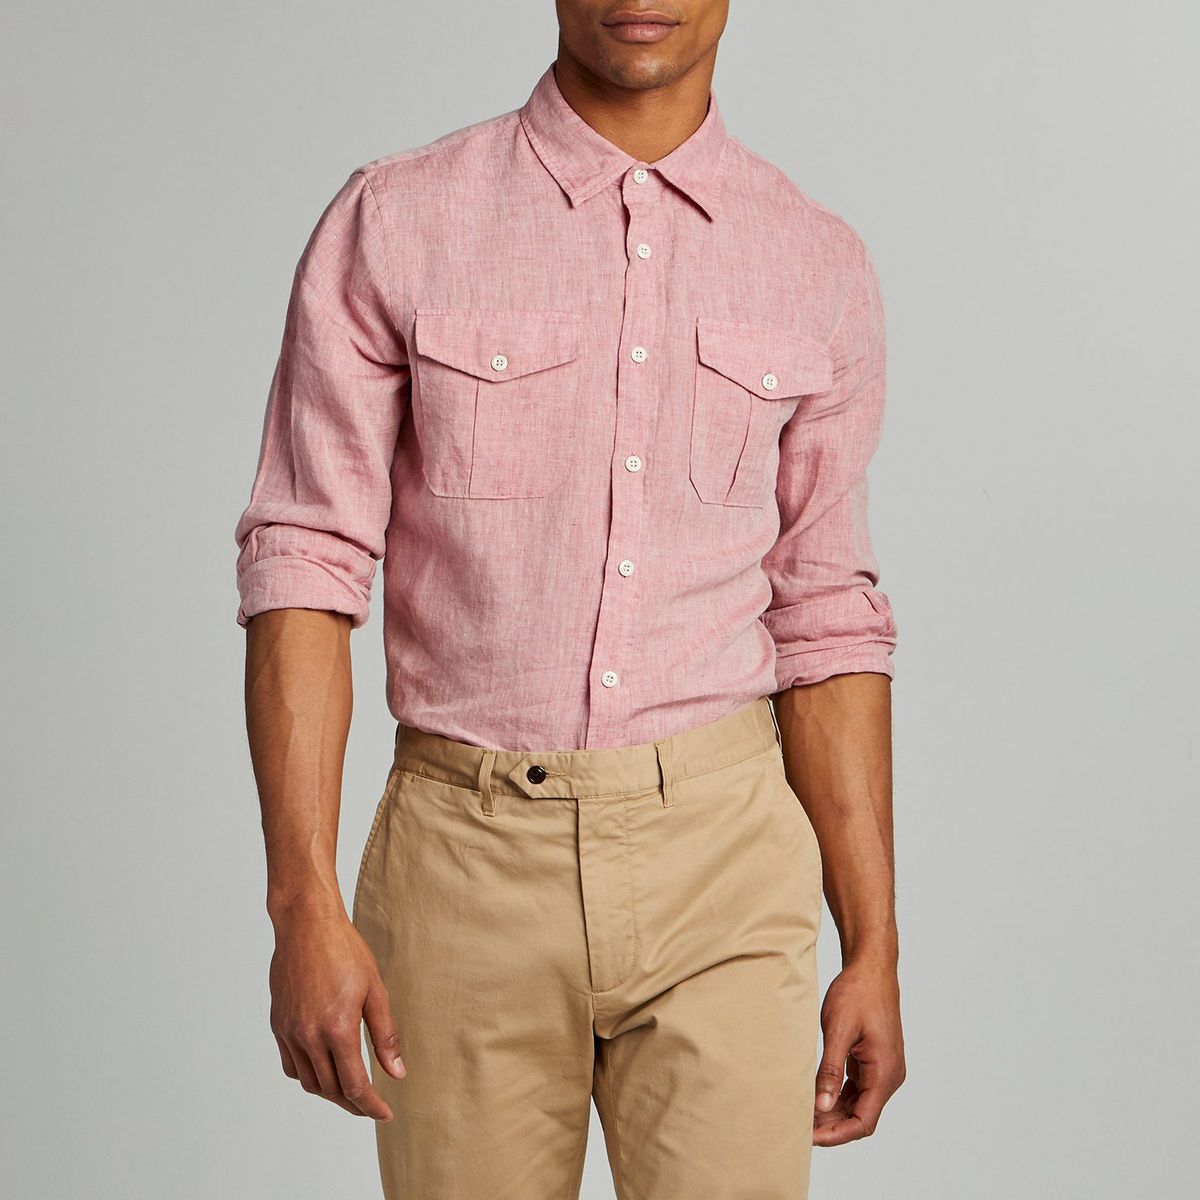 Mens Top Blouse,KYLEON Mens Cotton Linen Long Sleeve Casual Button Down Shirts Regular Fit Pockets Summer Beach Shirts 